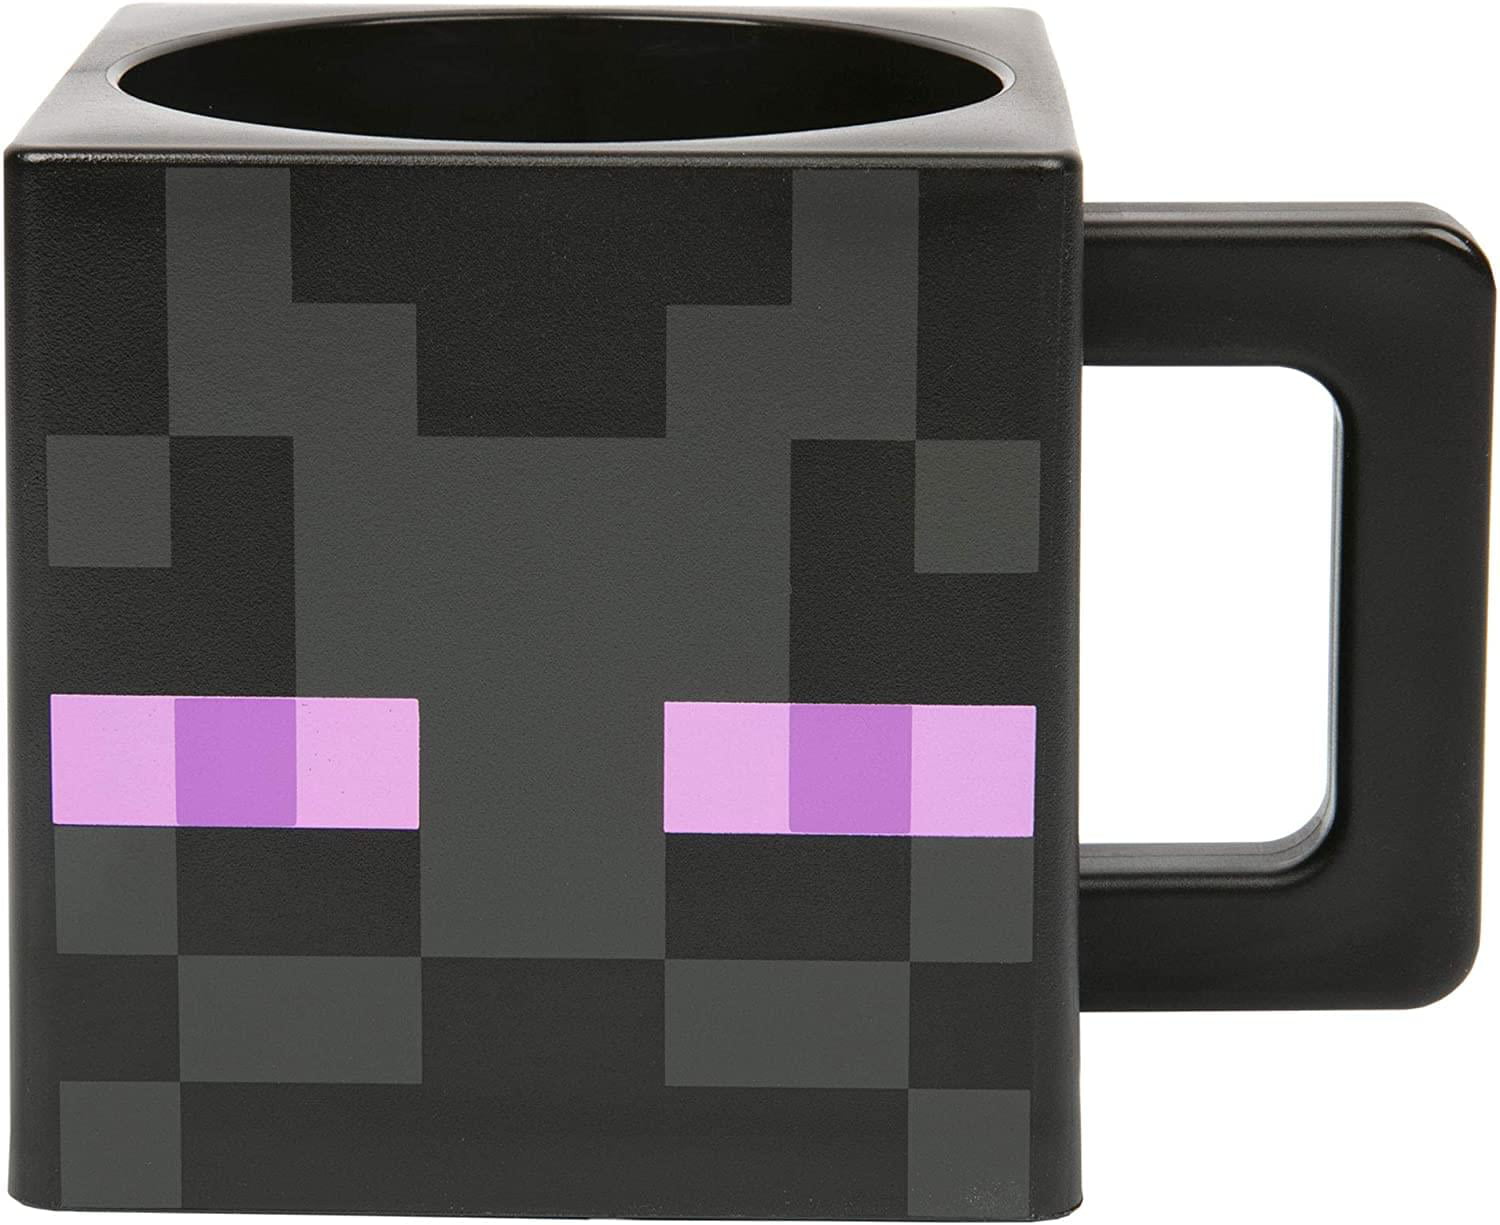 Minecraft Enderman Tea